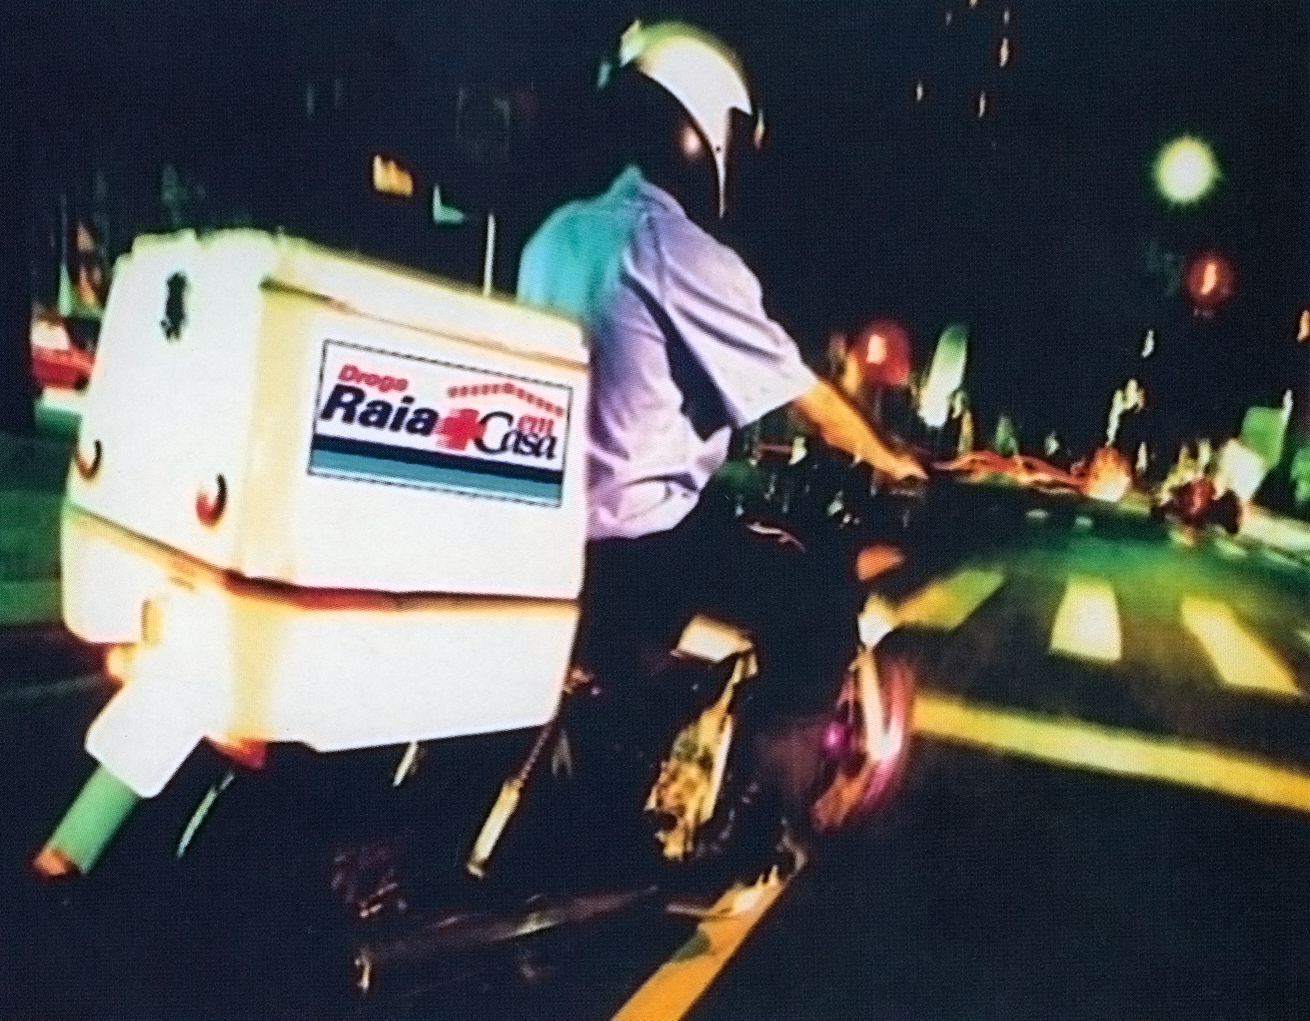 Foto de uma pessoa com capacete dirigindo uma moto de entrega de remédios da Droga Raia.